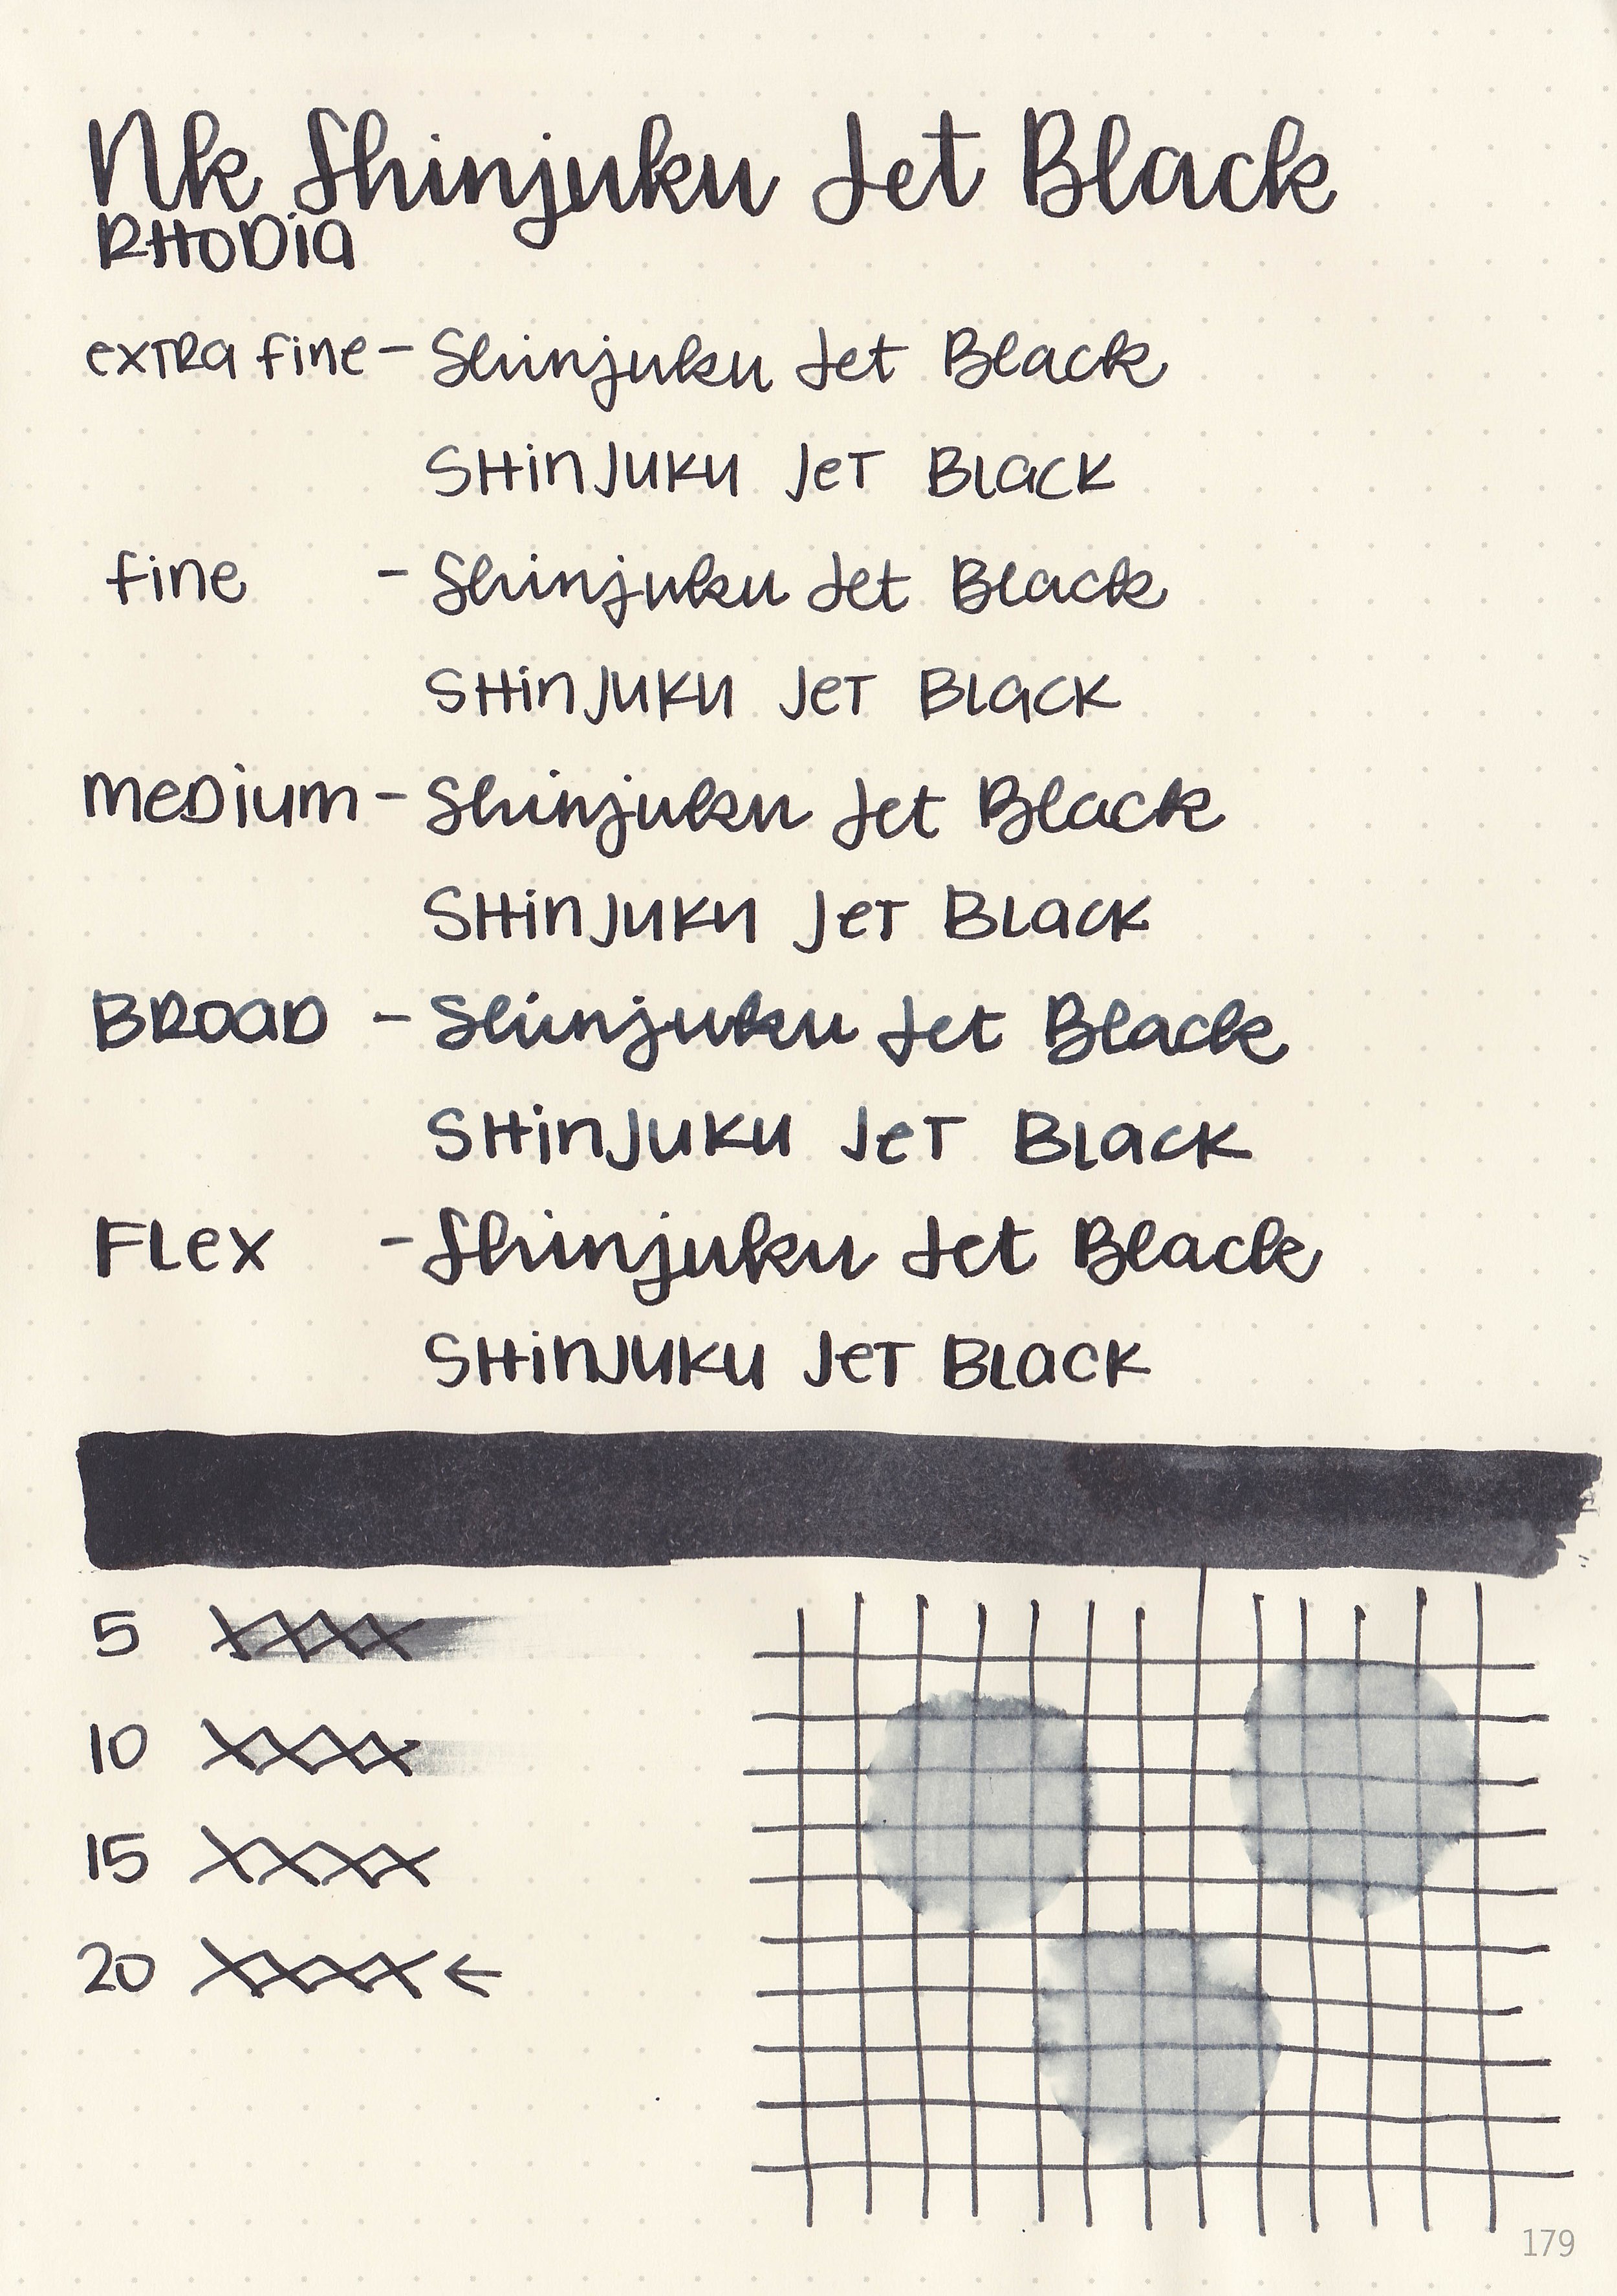 nk-shinko-jet-black-5.jpg